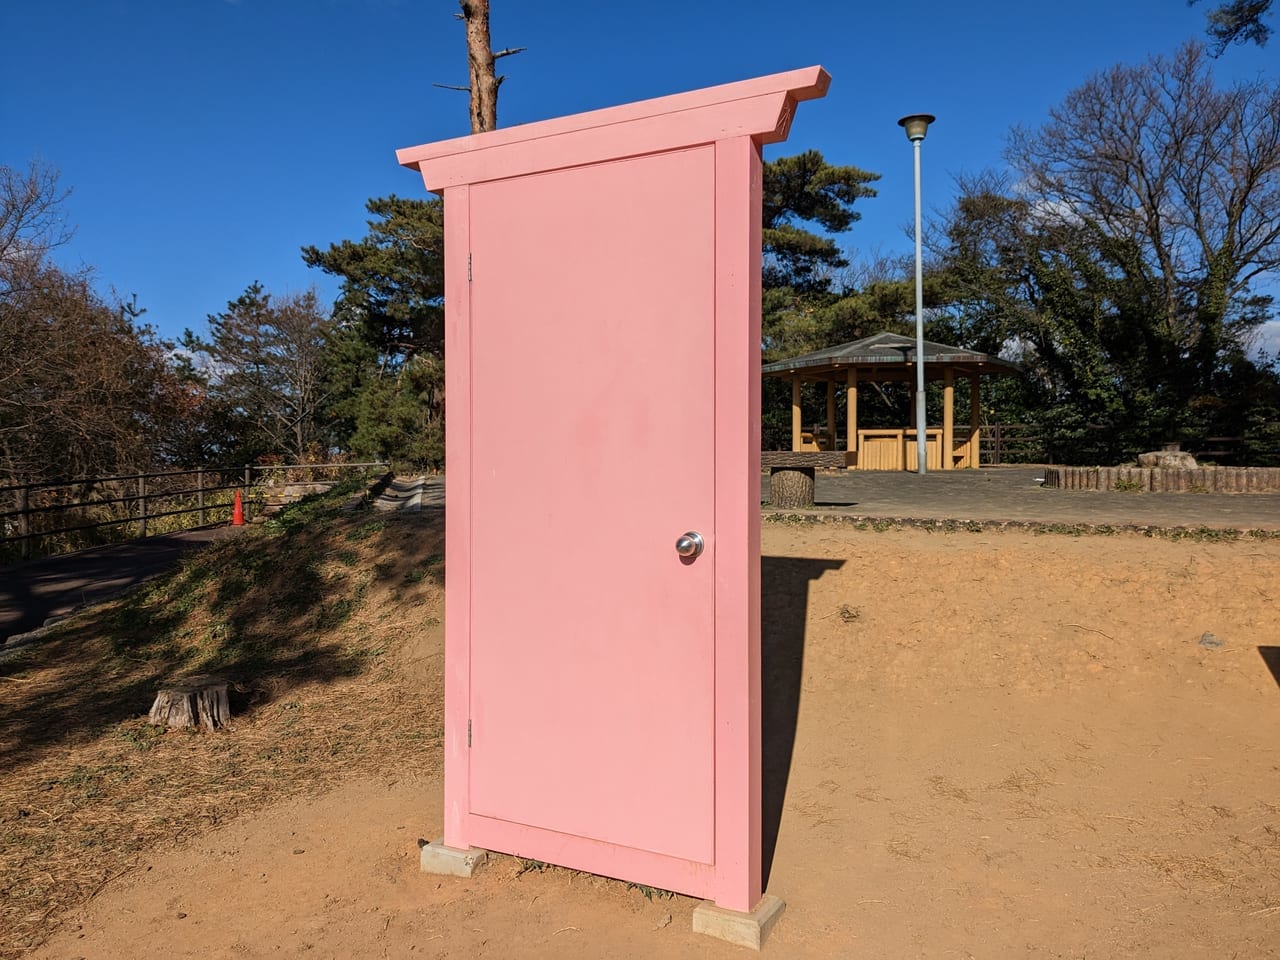 ピンクのドア